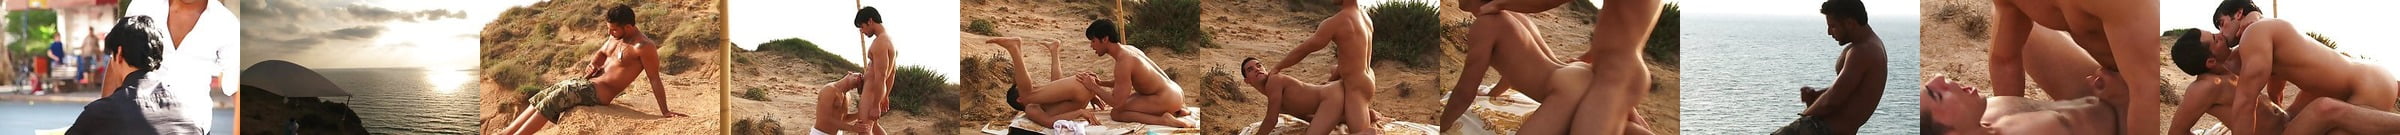 Matan Shalev 2022 Free Gay Pornstar Videos Xhamster